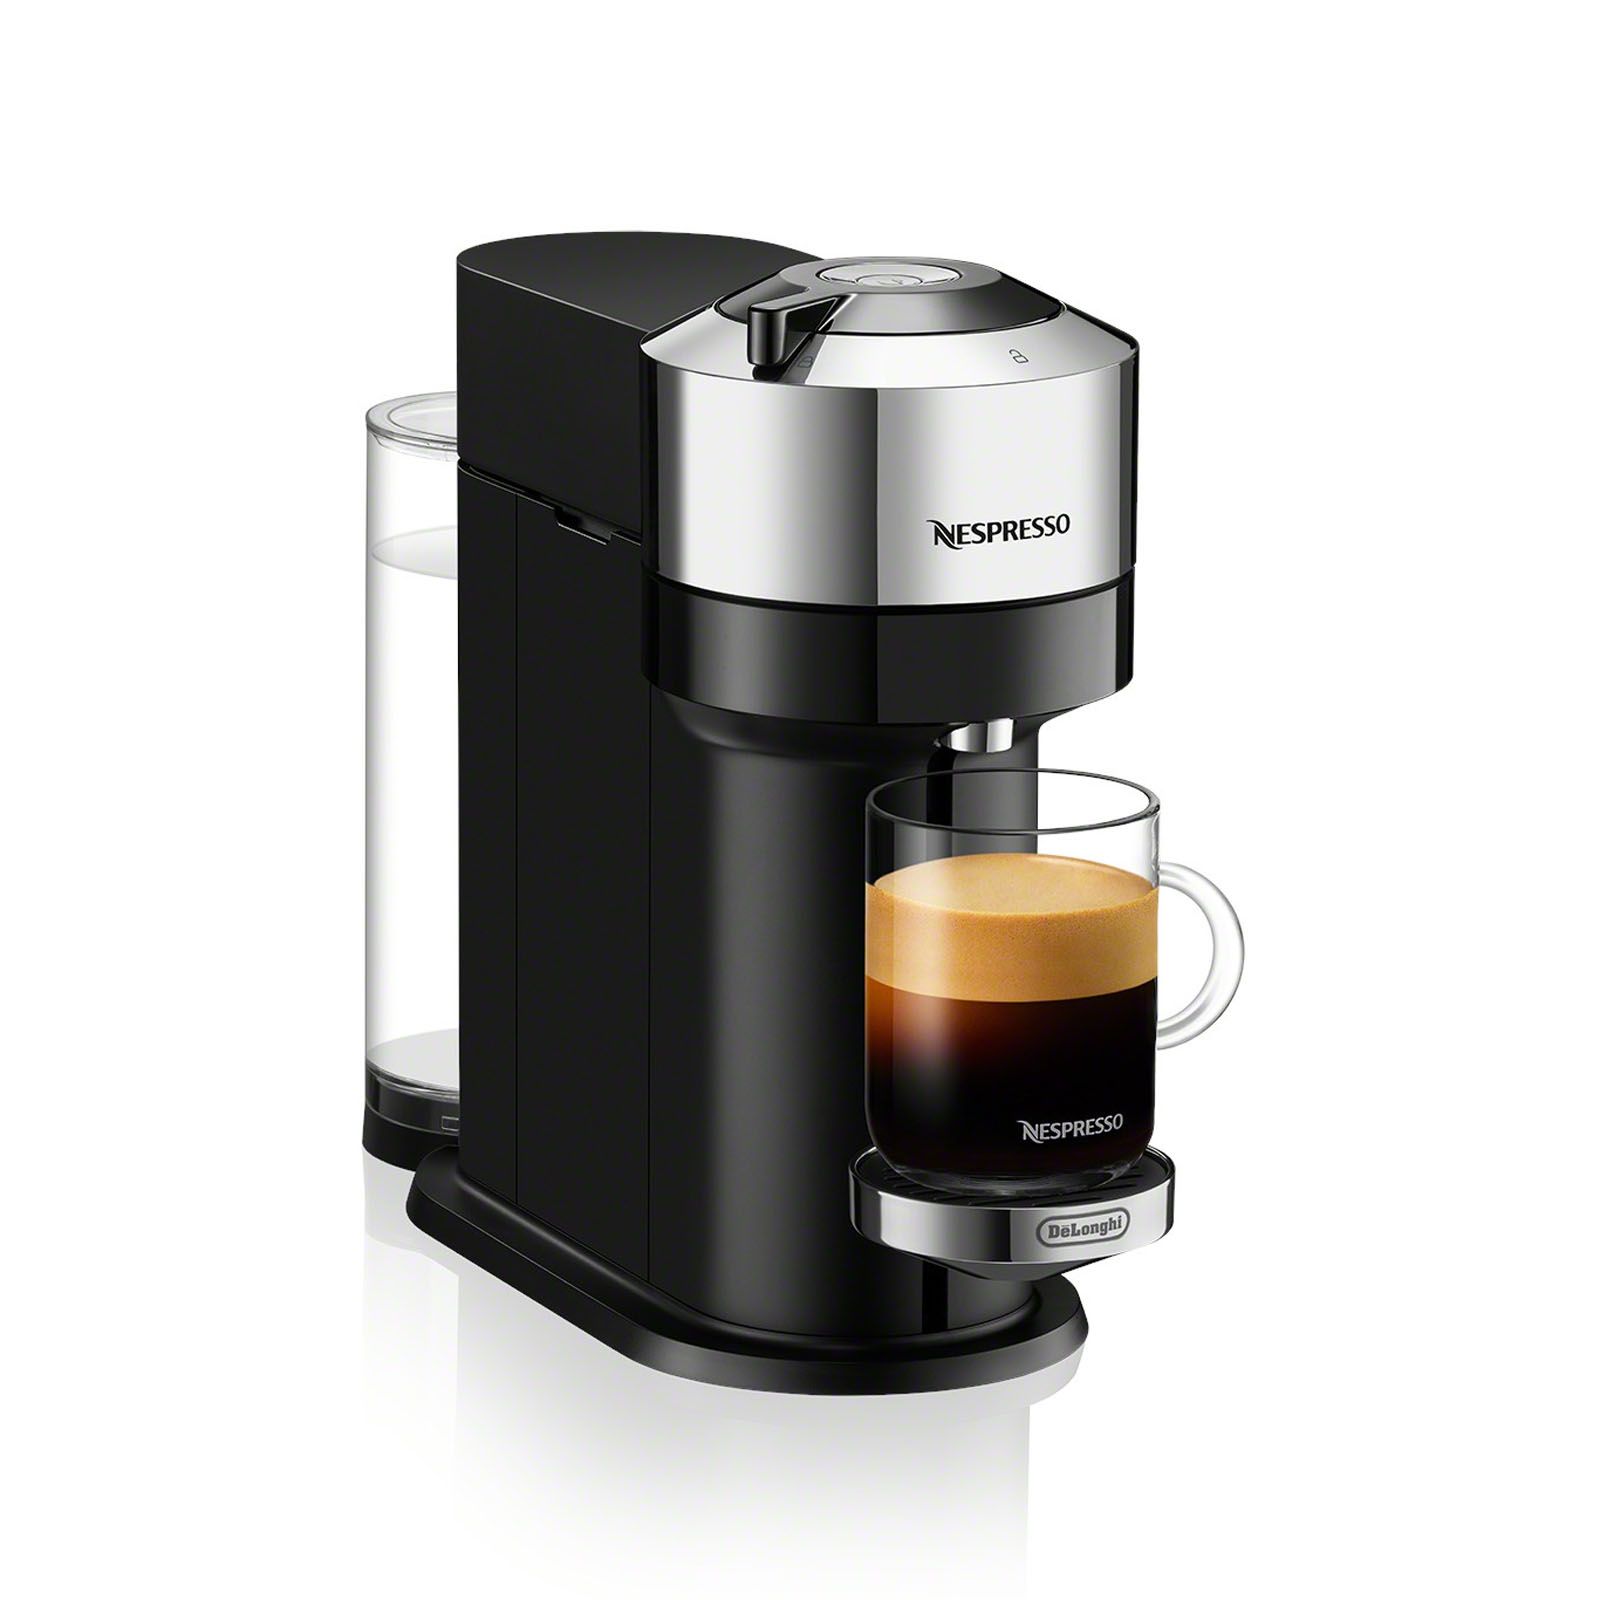 Nespresso Vertuo NEXT Coffee and Espresso Machine by De'Longhi